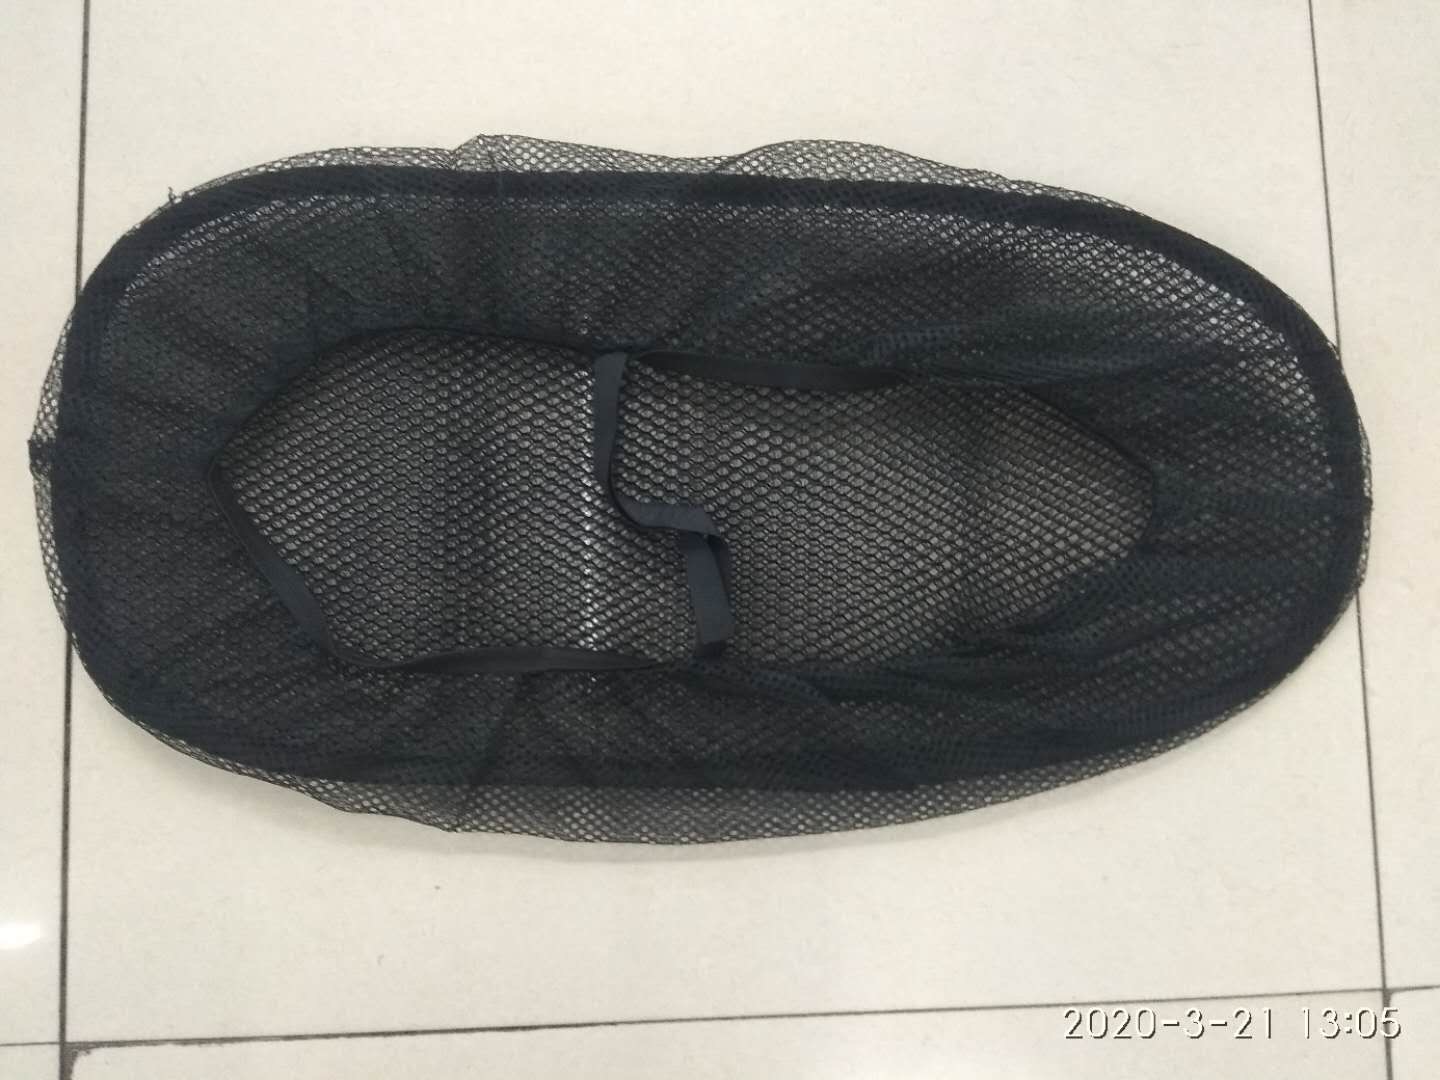 3D网套永福超凉太空坐垫透气隔热防晒厂家直销产品图